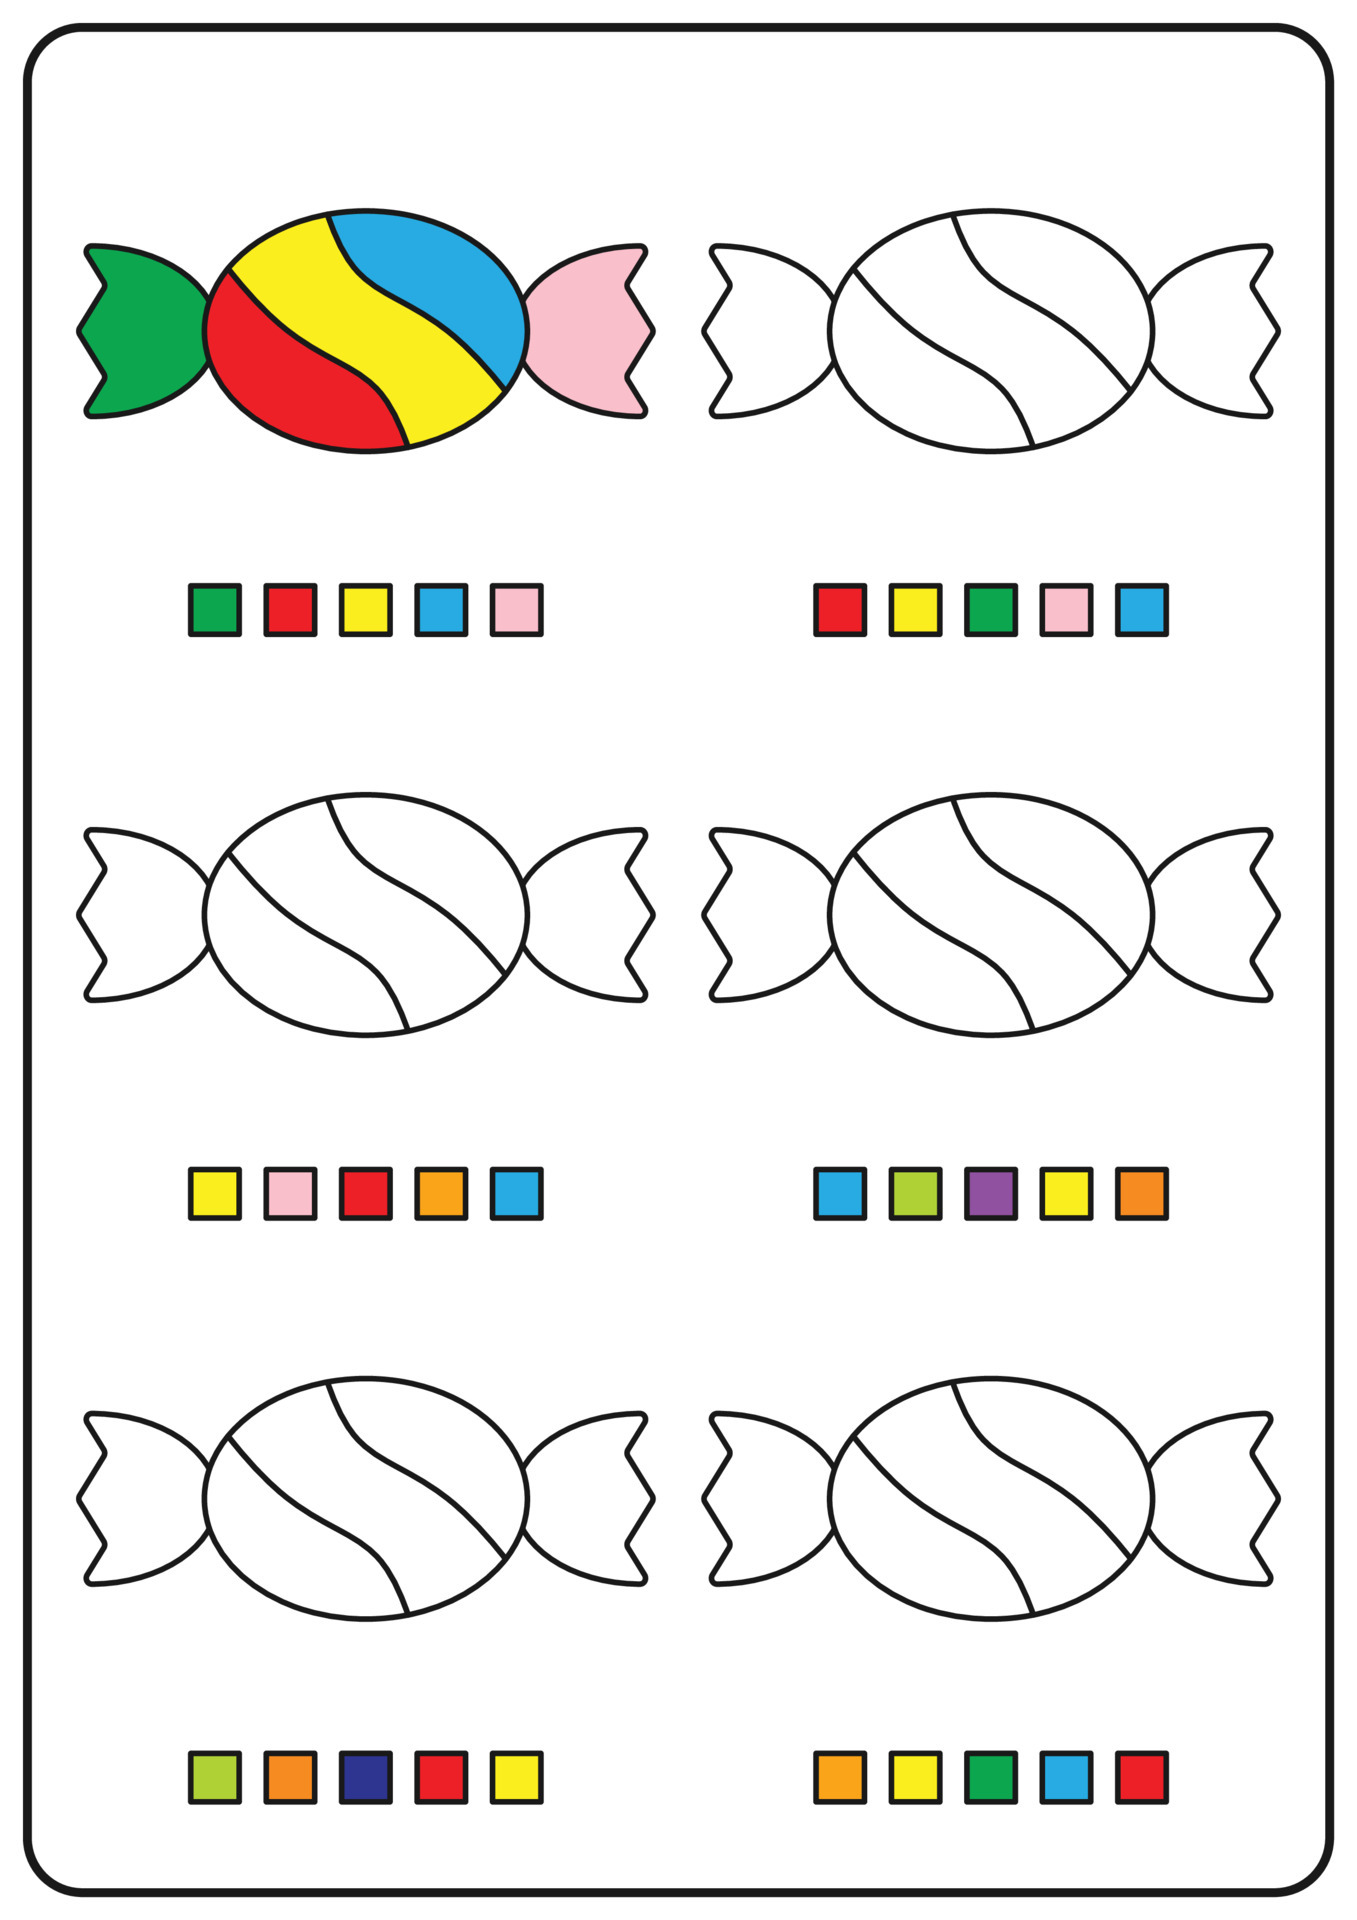 Roblox: Denis Daily - Roblox - Just Color Crianças : Páginas para colorir  para crianças